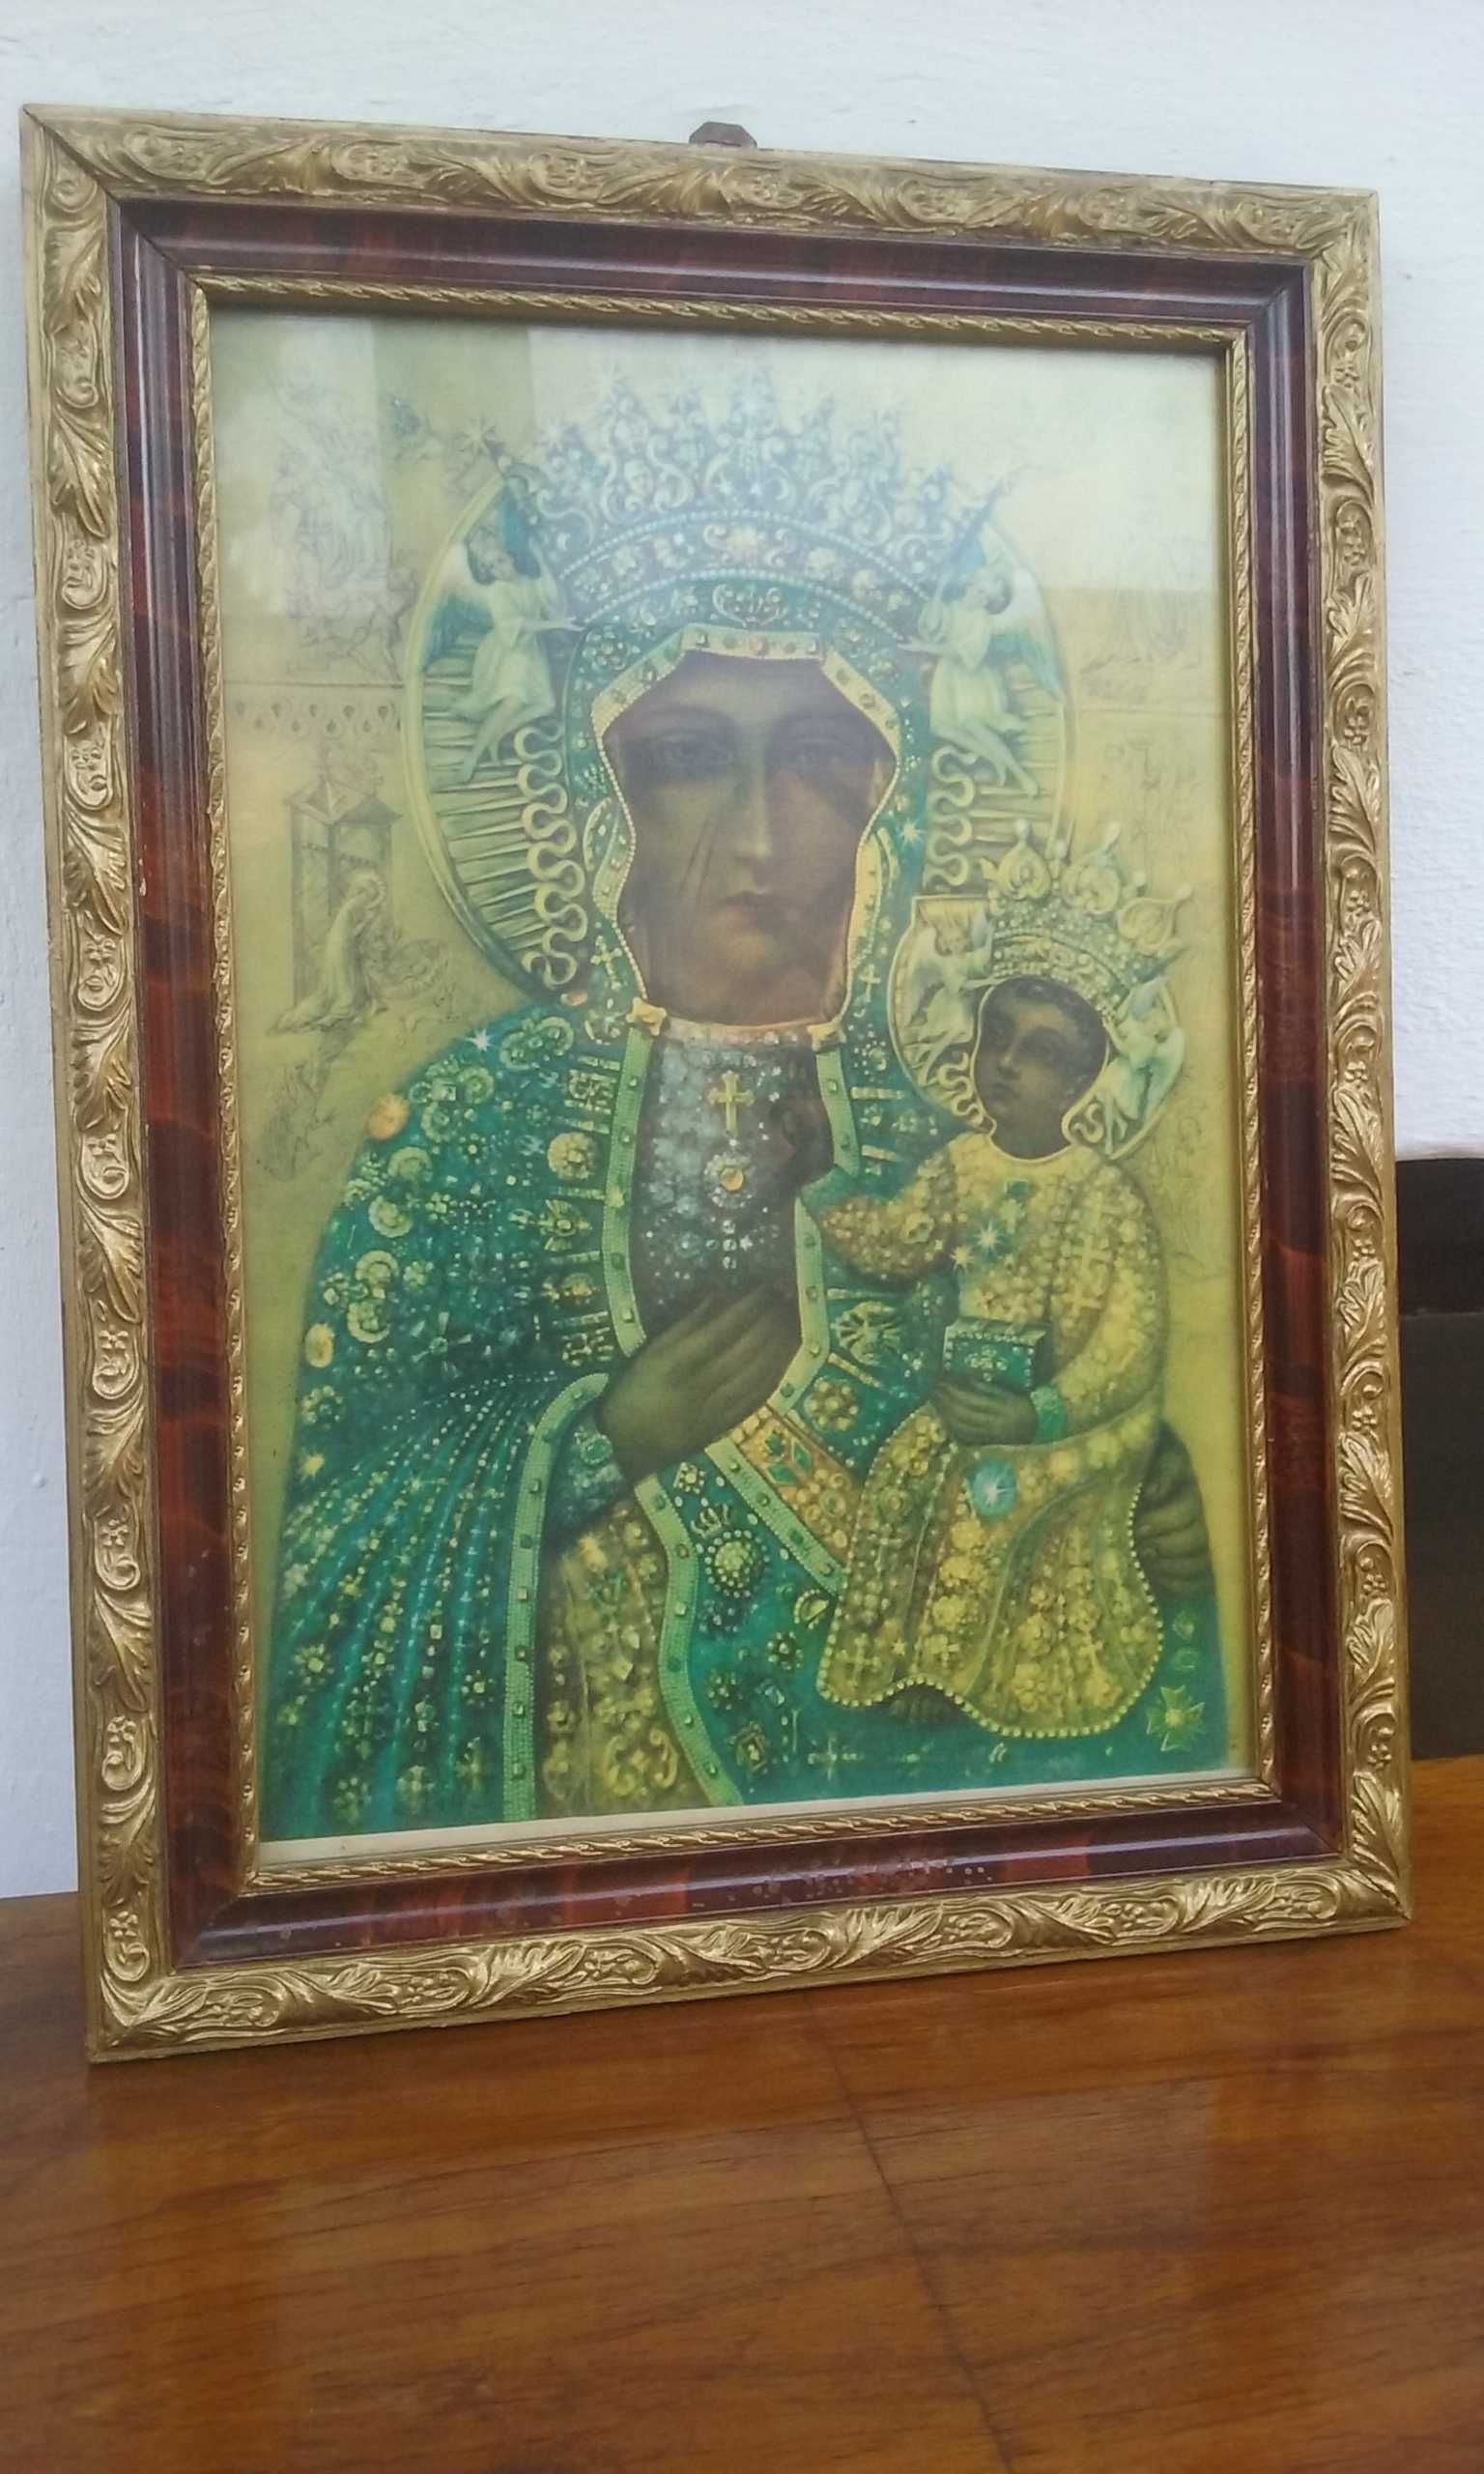 Stary obraz Matka Boska oleodruk w pięknej ramie